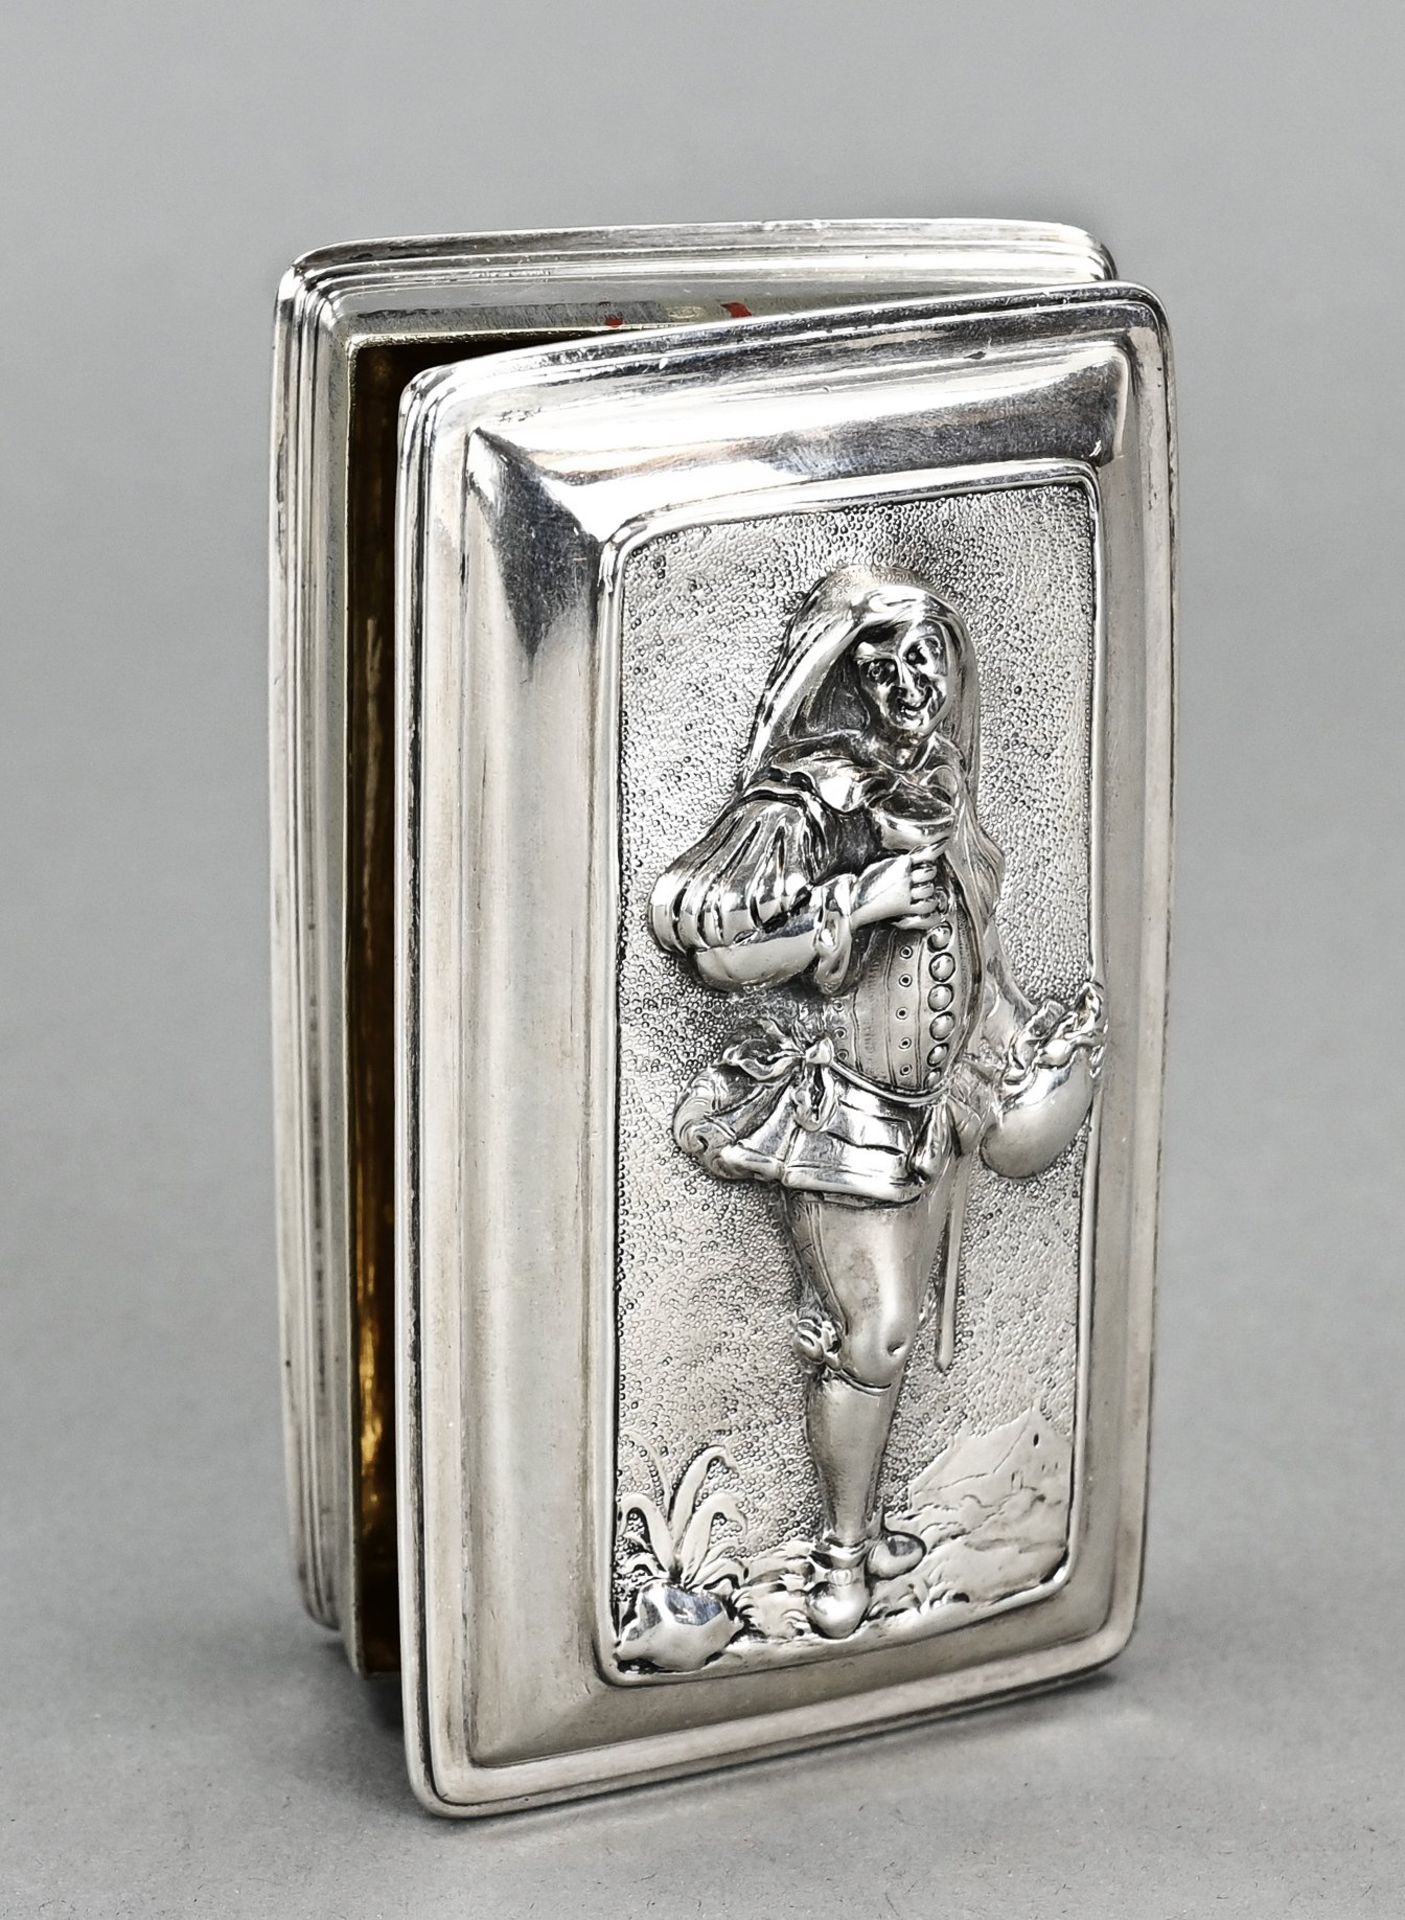 Antique silver tobacco box